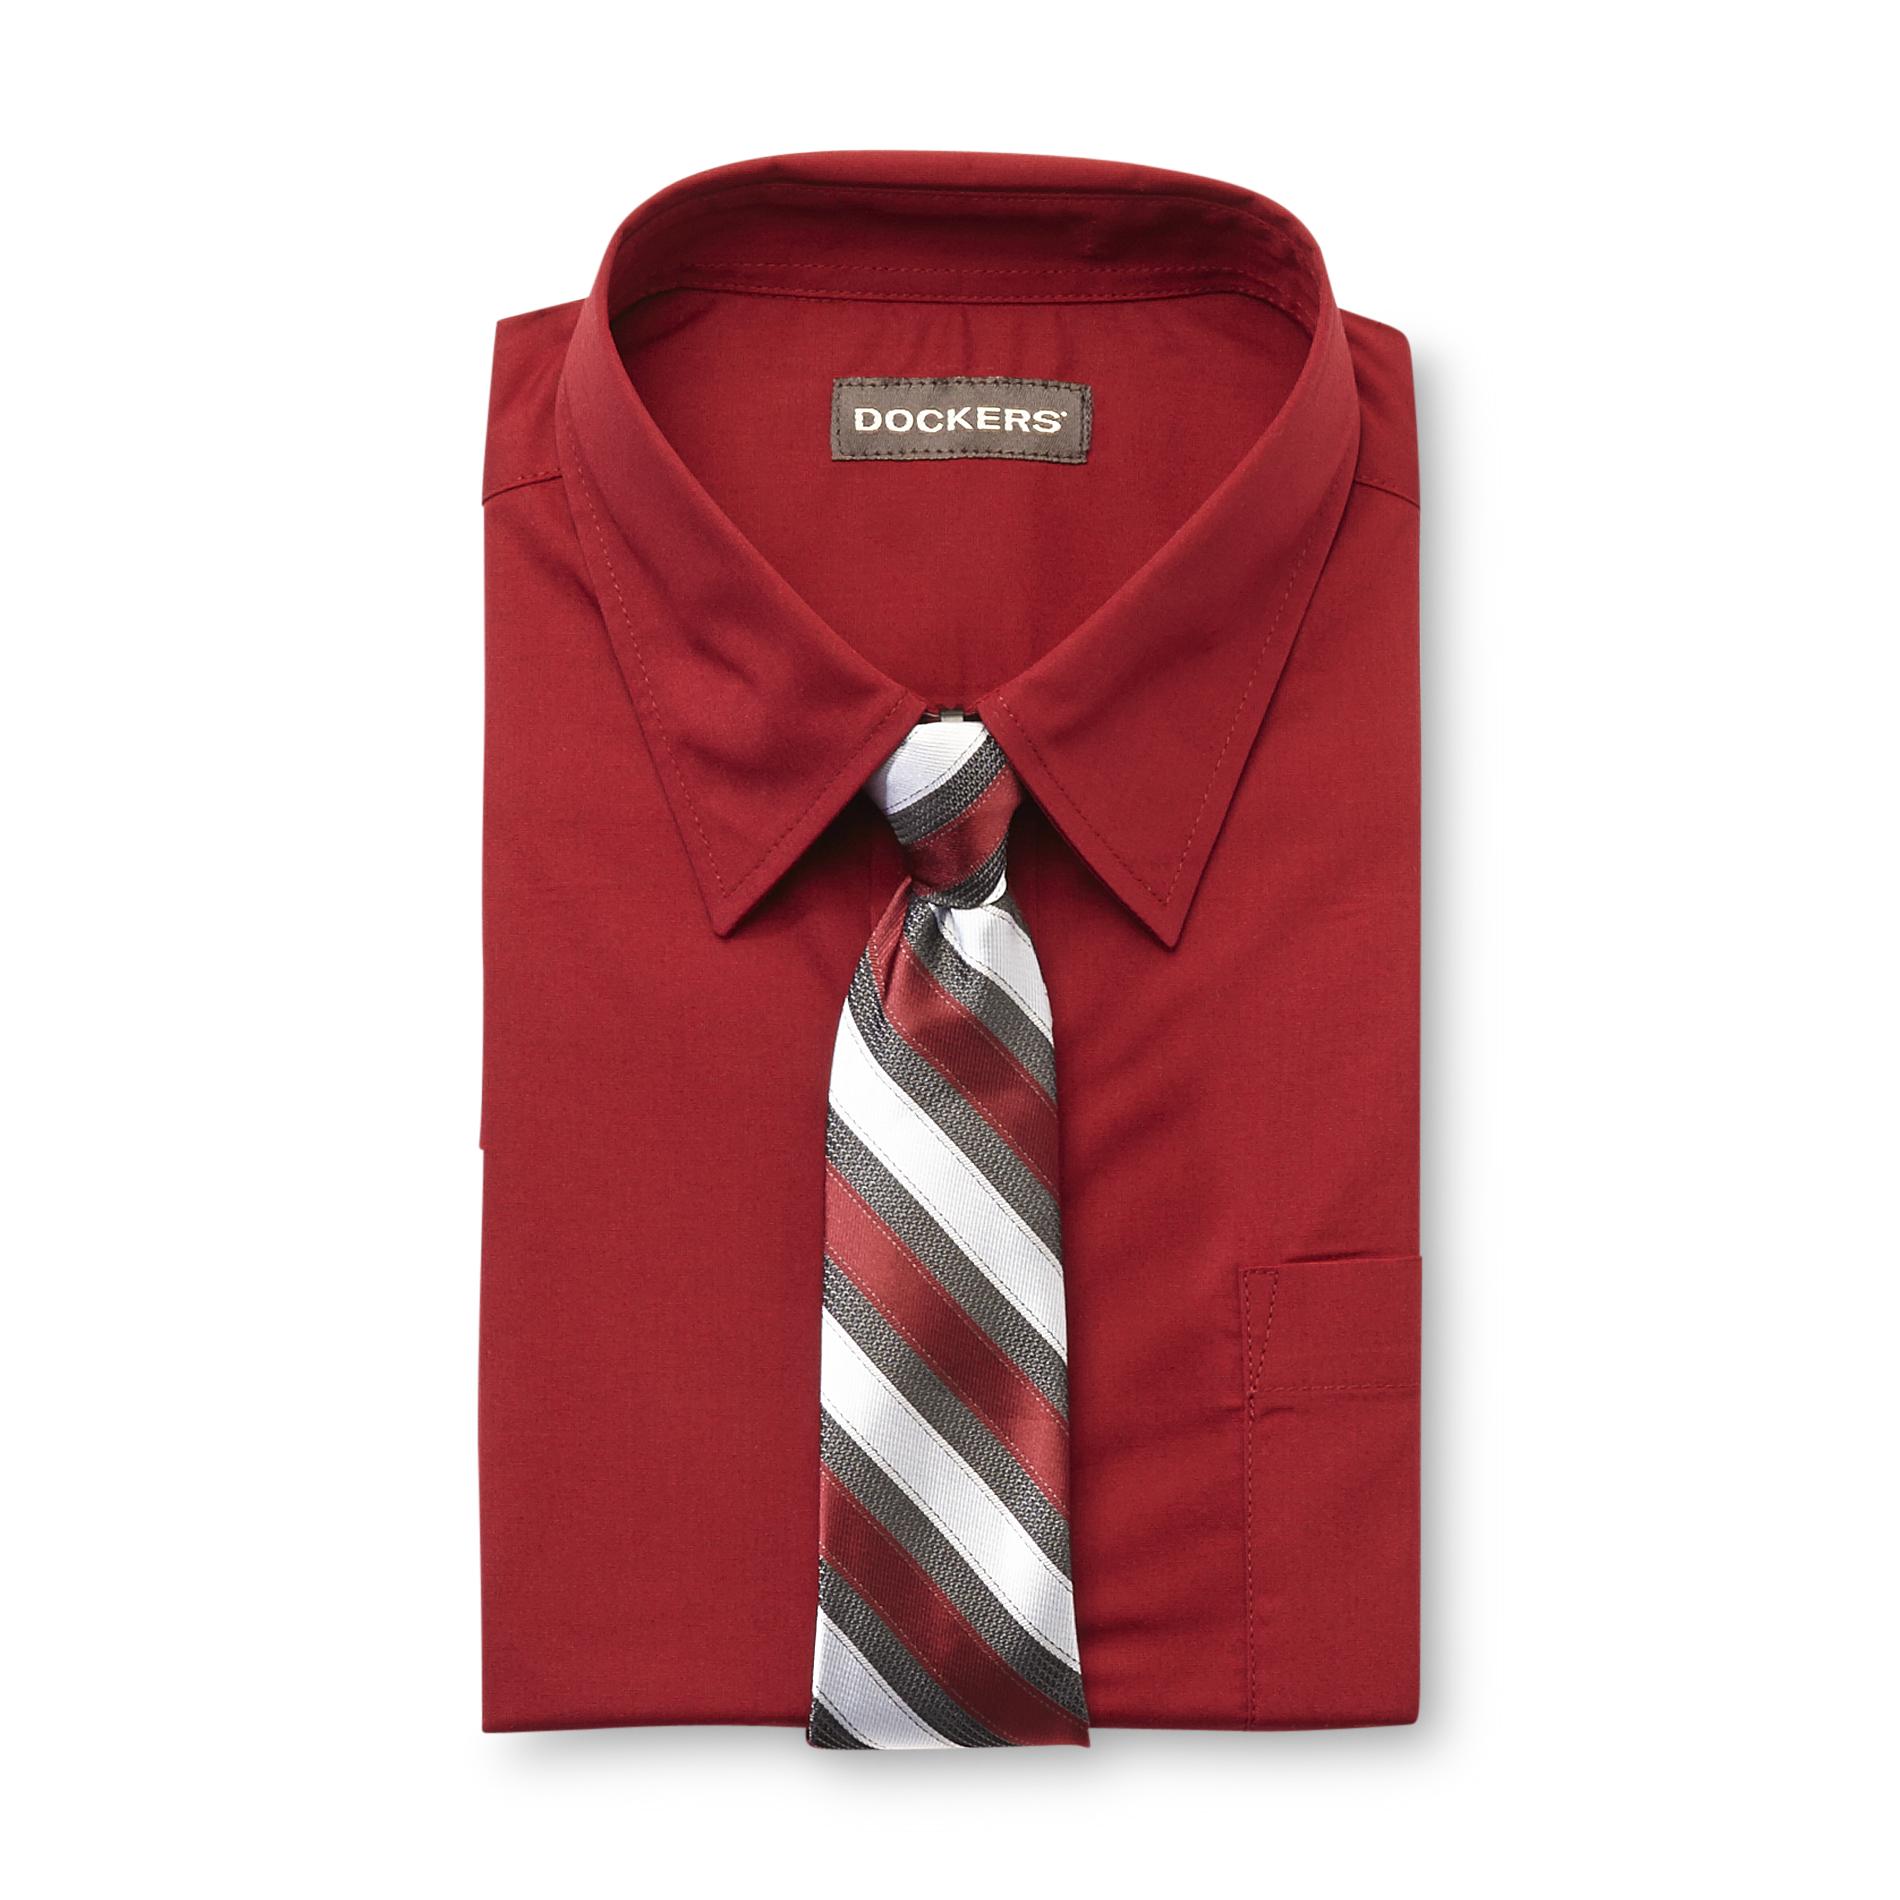 Dockers Boy's Dress Shirt & Tie - Striped